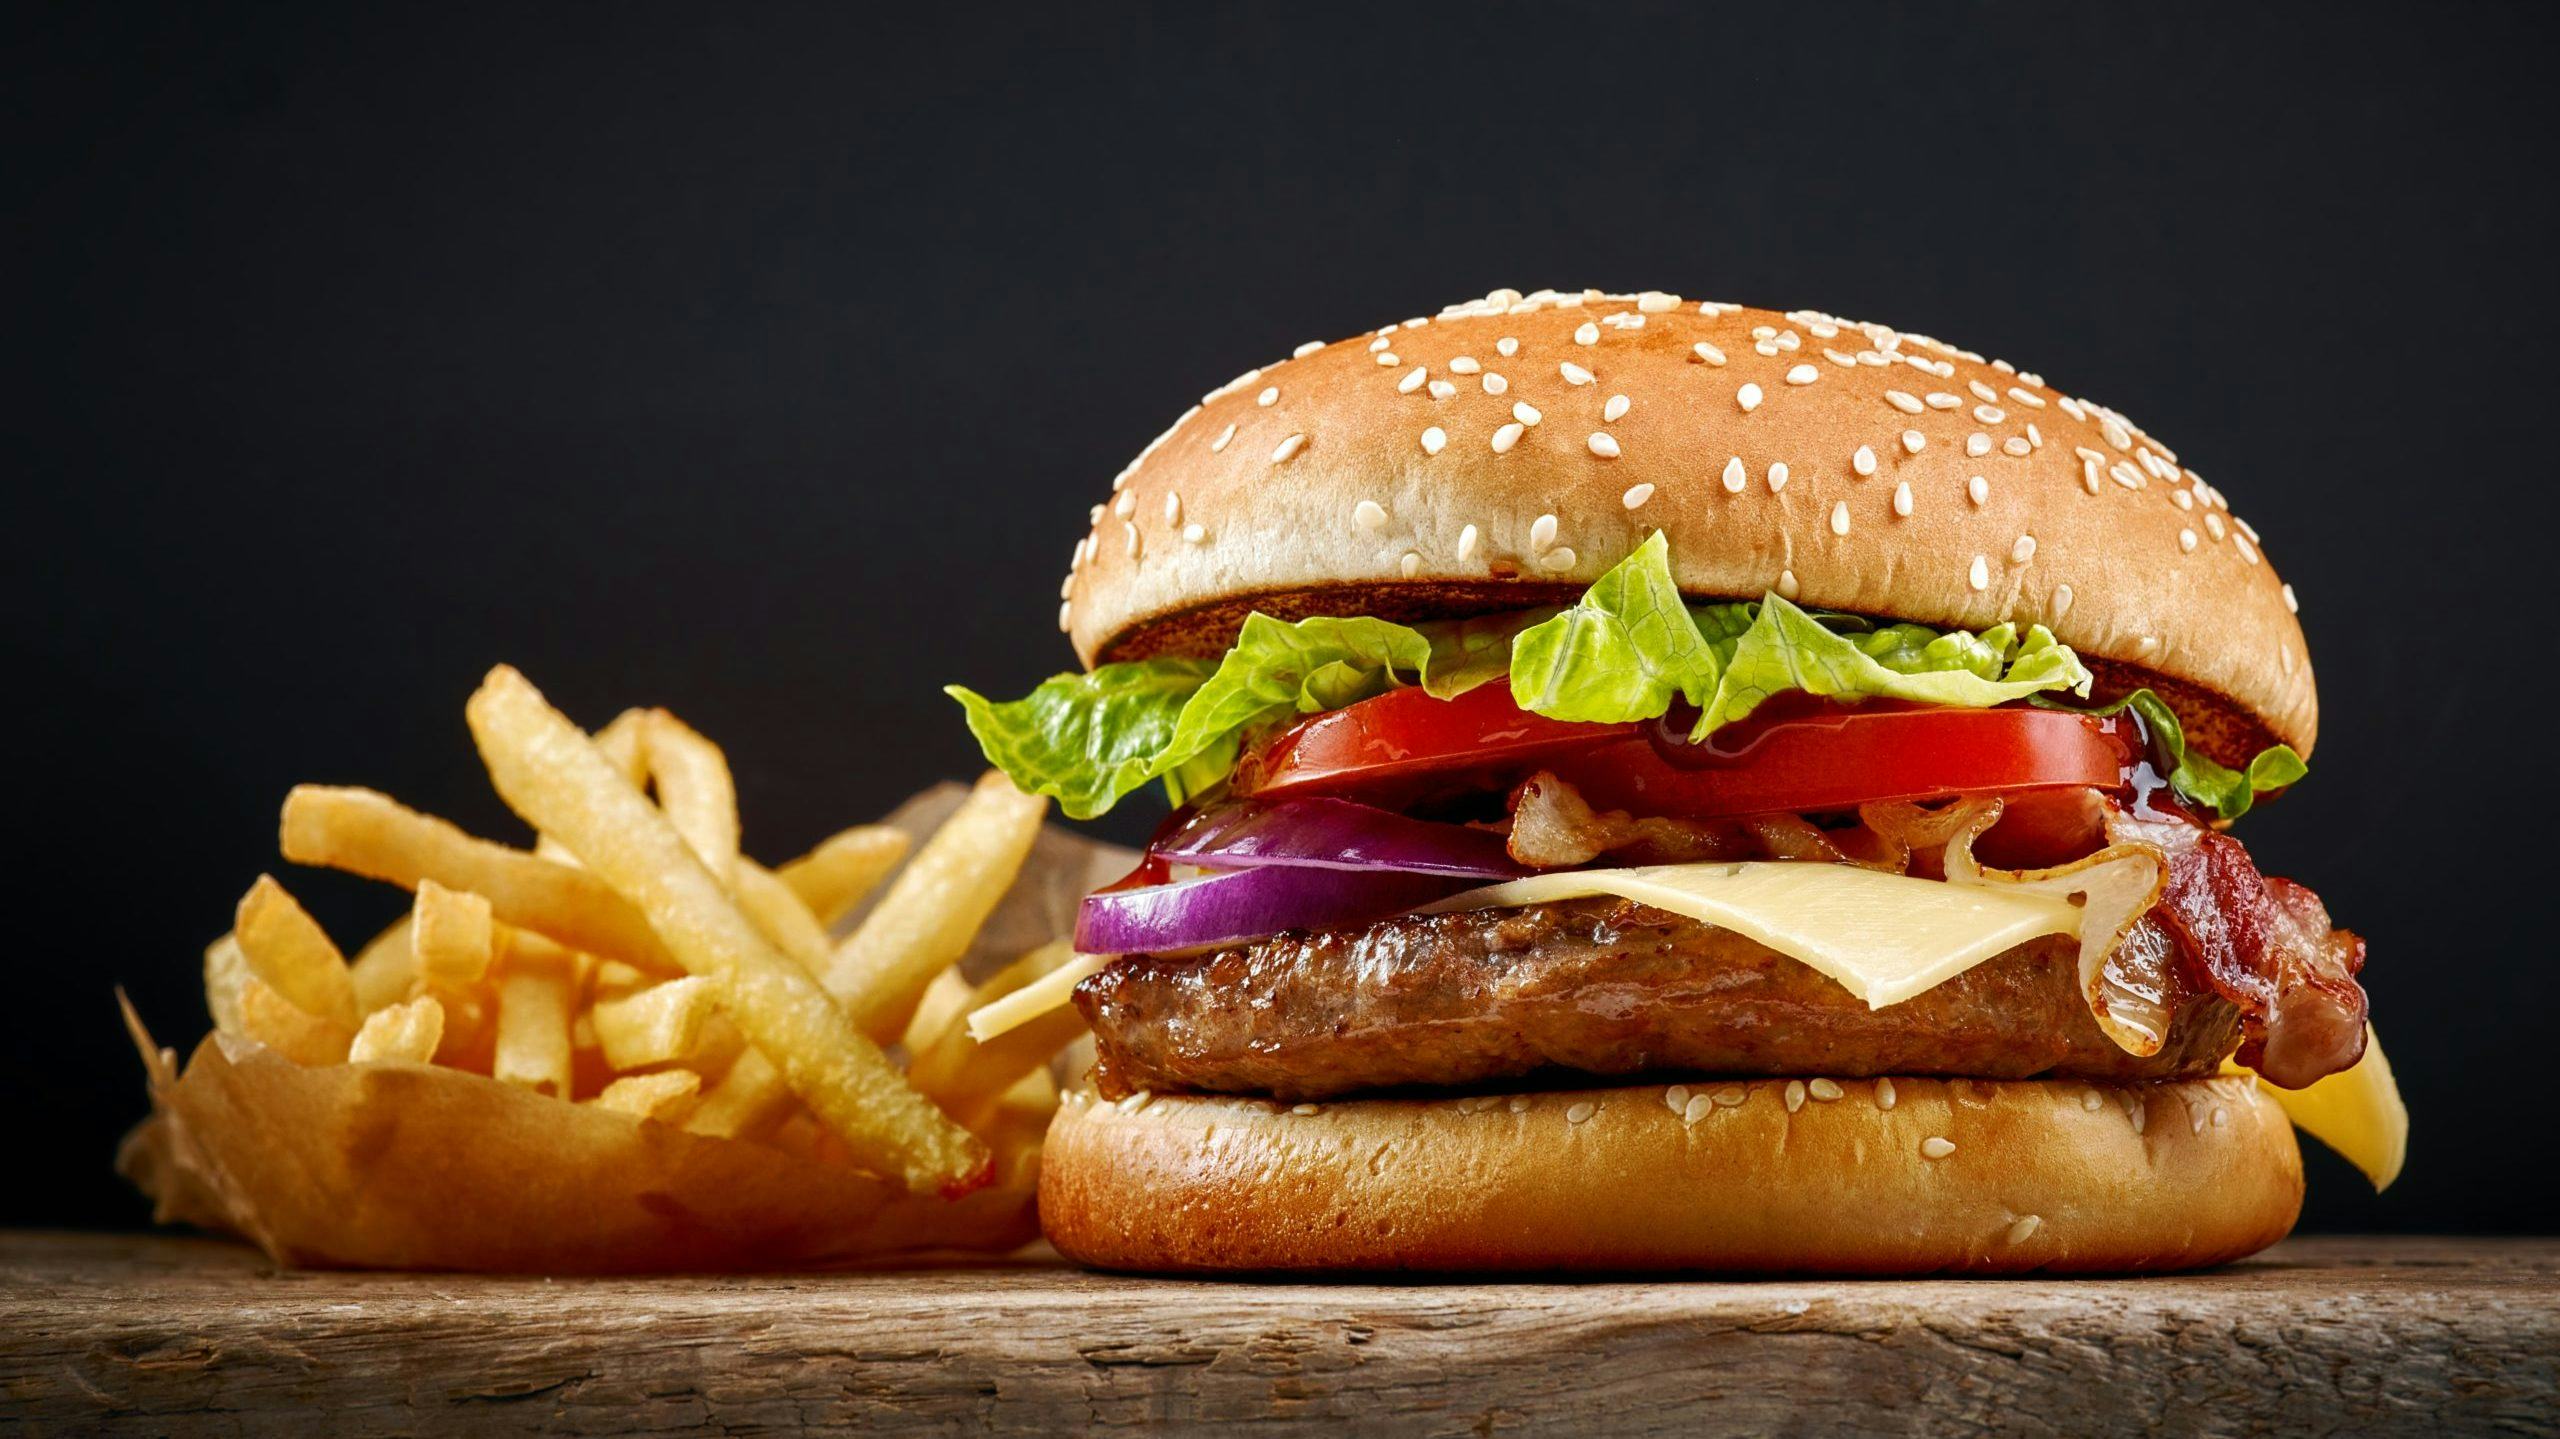 Hamburgersauzen: 10 verrassende variaties om zelf te maken